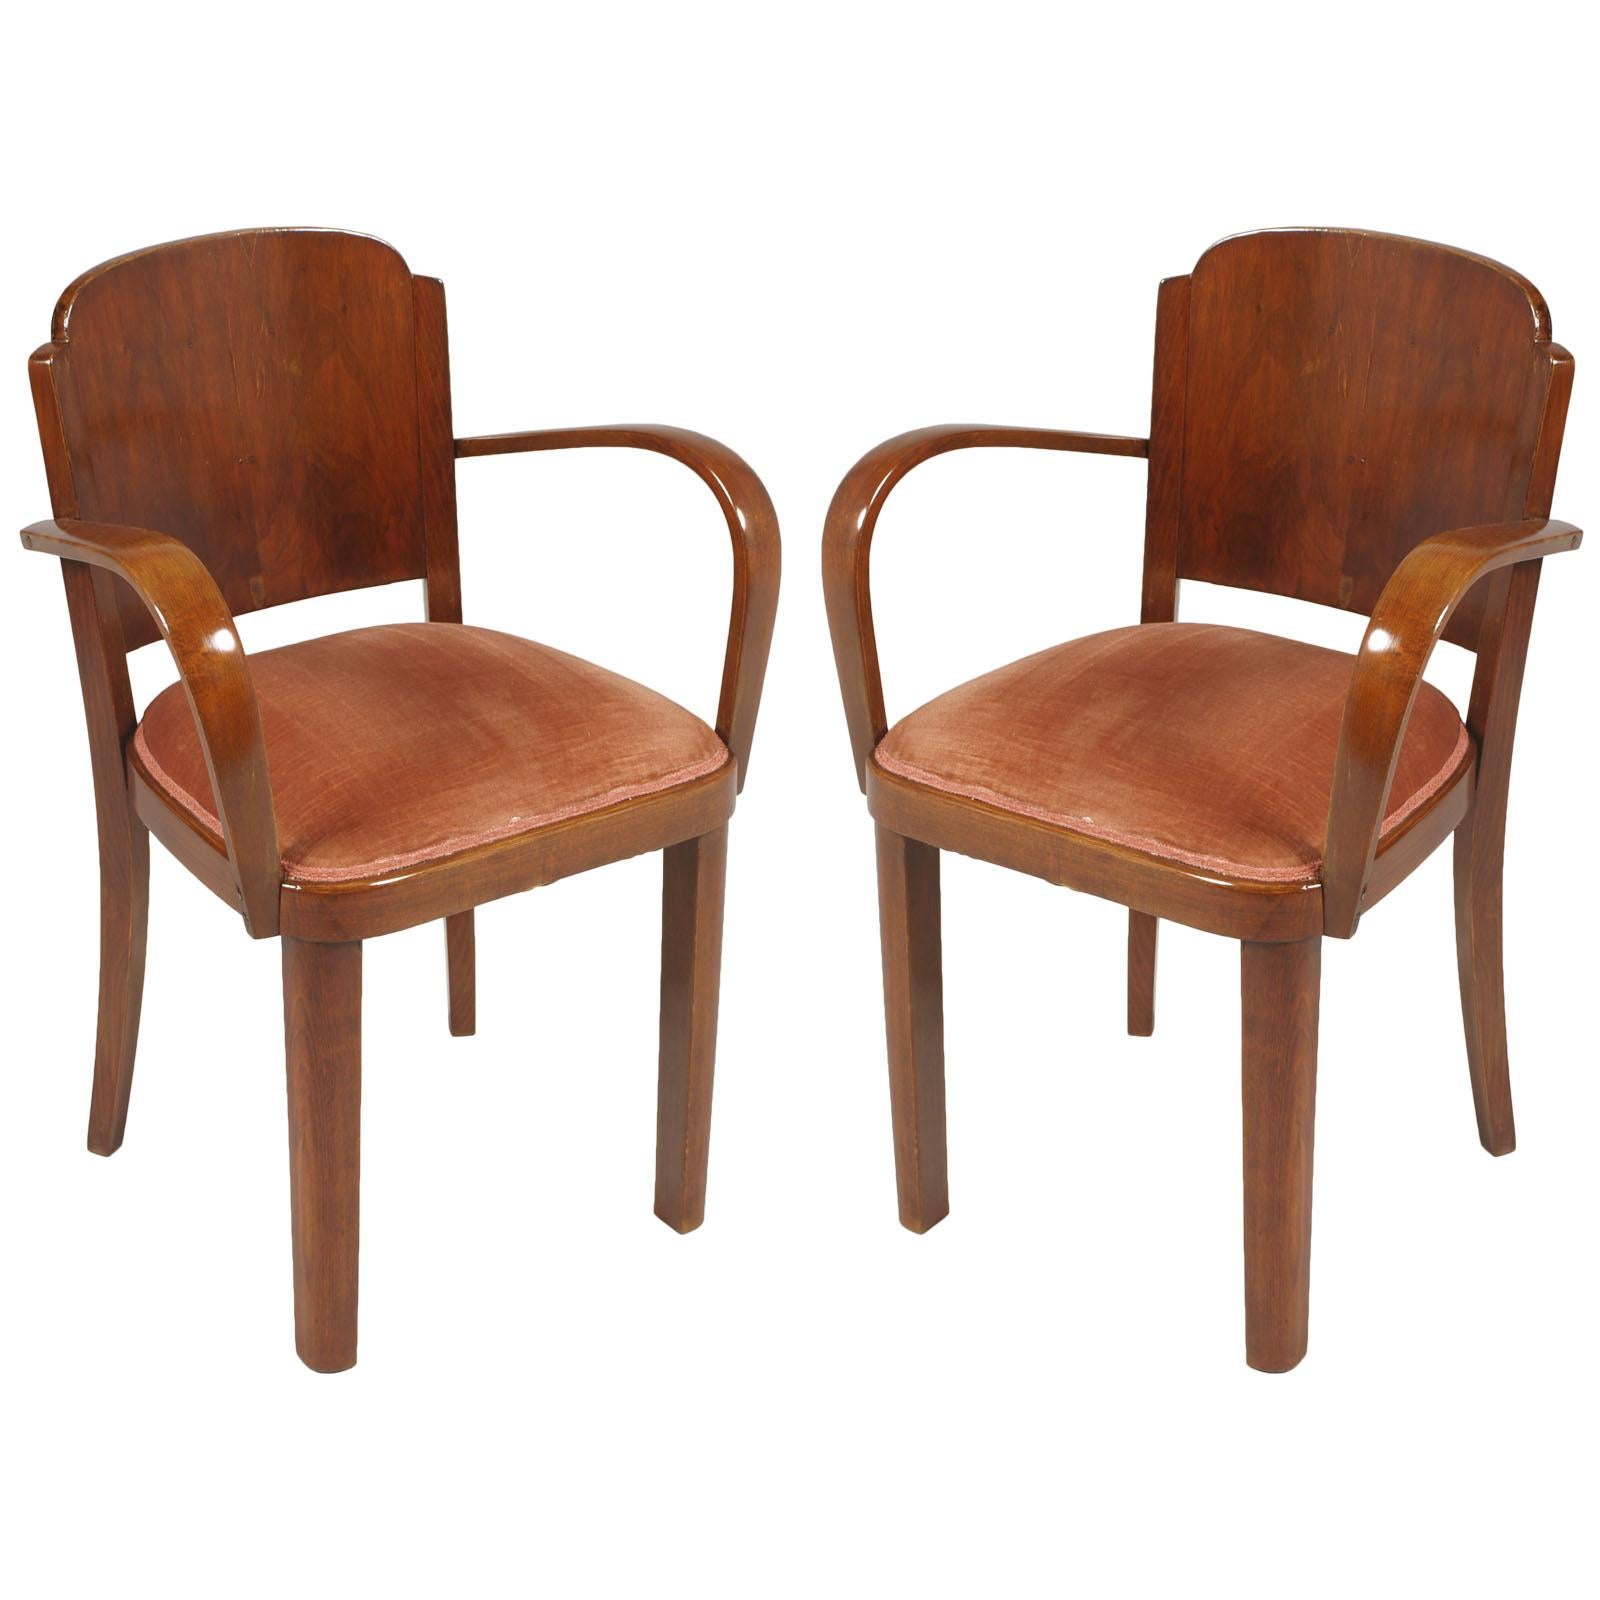 Italian 1920s Art Deco Bridge Chairs, All Original Velvet Upholstered, in Walnut For Sale